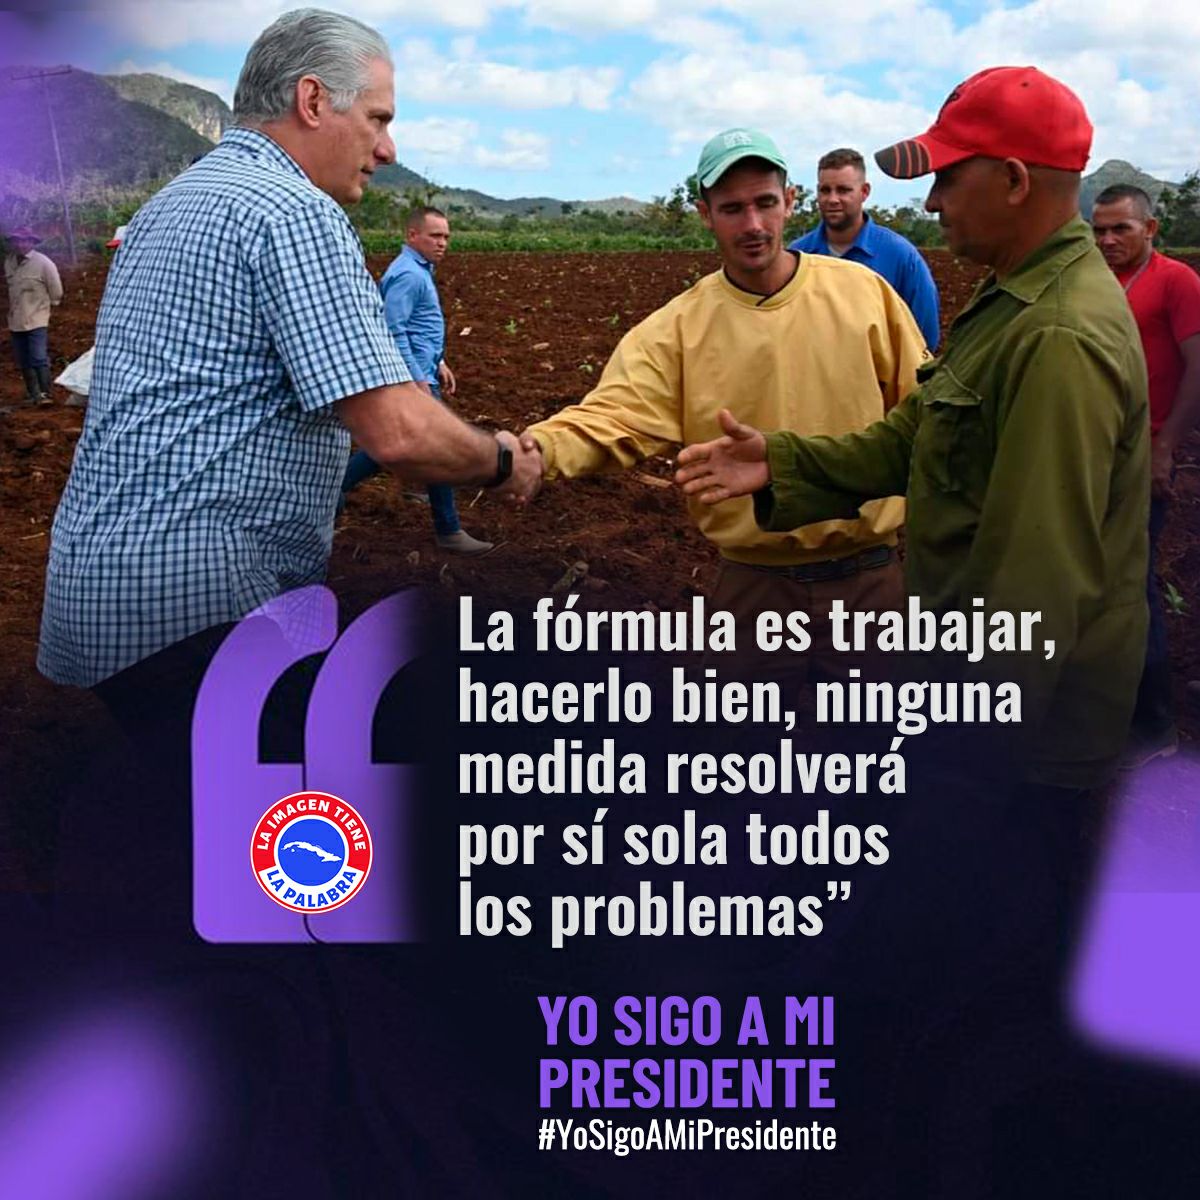 Trabajando se alcanzarán nuestros objetivos. #Cuba #YpSigoAMiPresidente